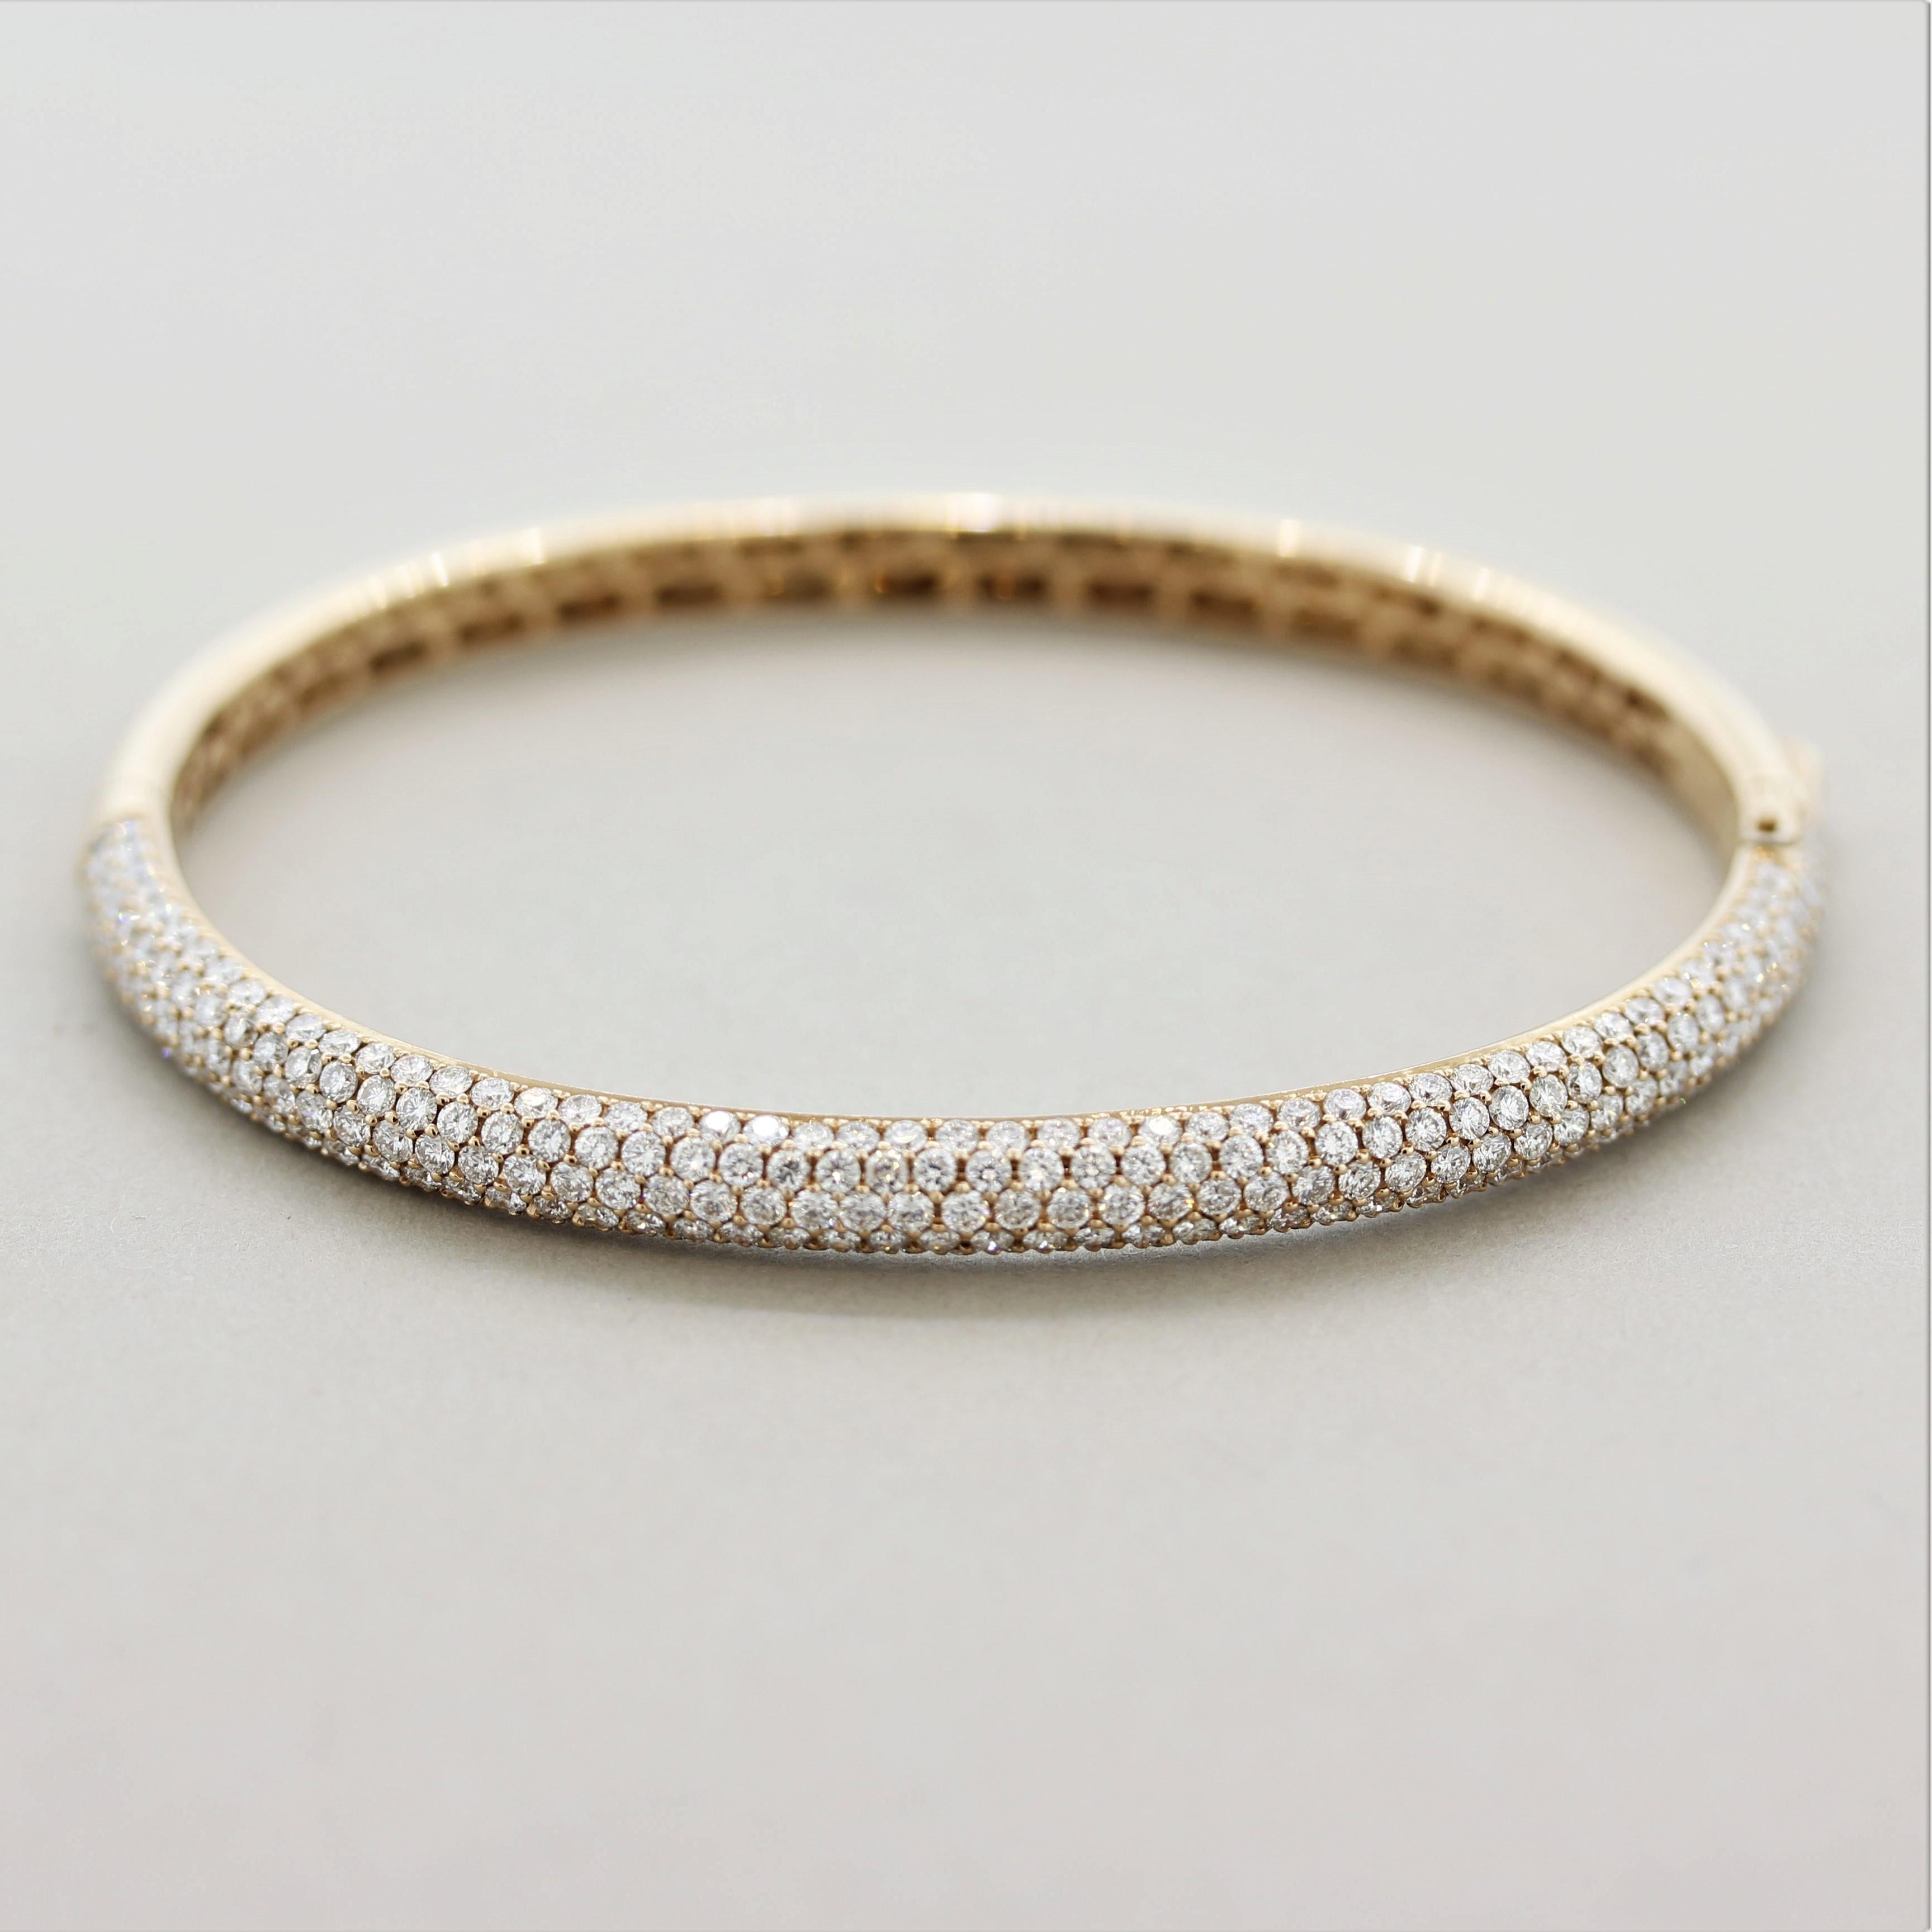 Un élégant bracelet-bracelet orné de 4,43 carats de diamants ronds extra fins de taille brillant. Leur qualité se remarque facilement à la brillance et à l'éclat qui s'en dégagent. Elles sont serties en pavé, parfaitement espacées les unes des